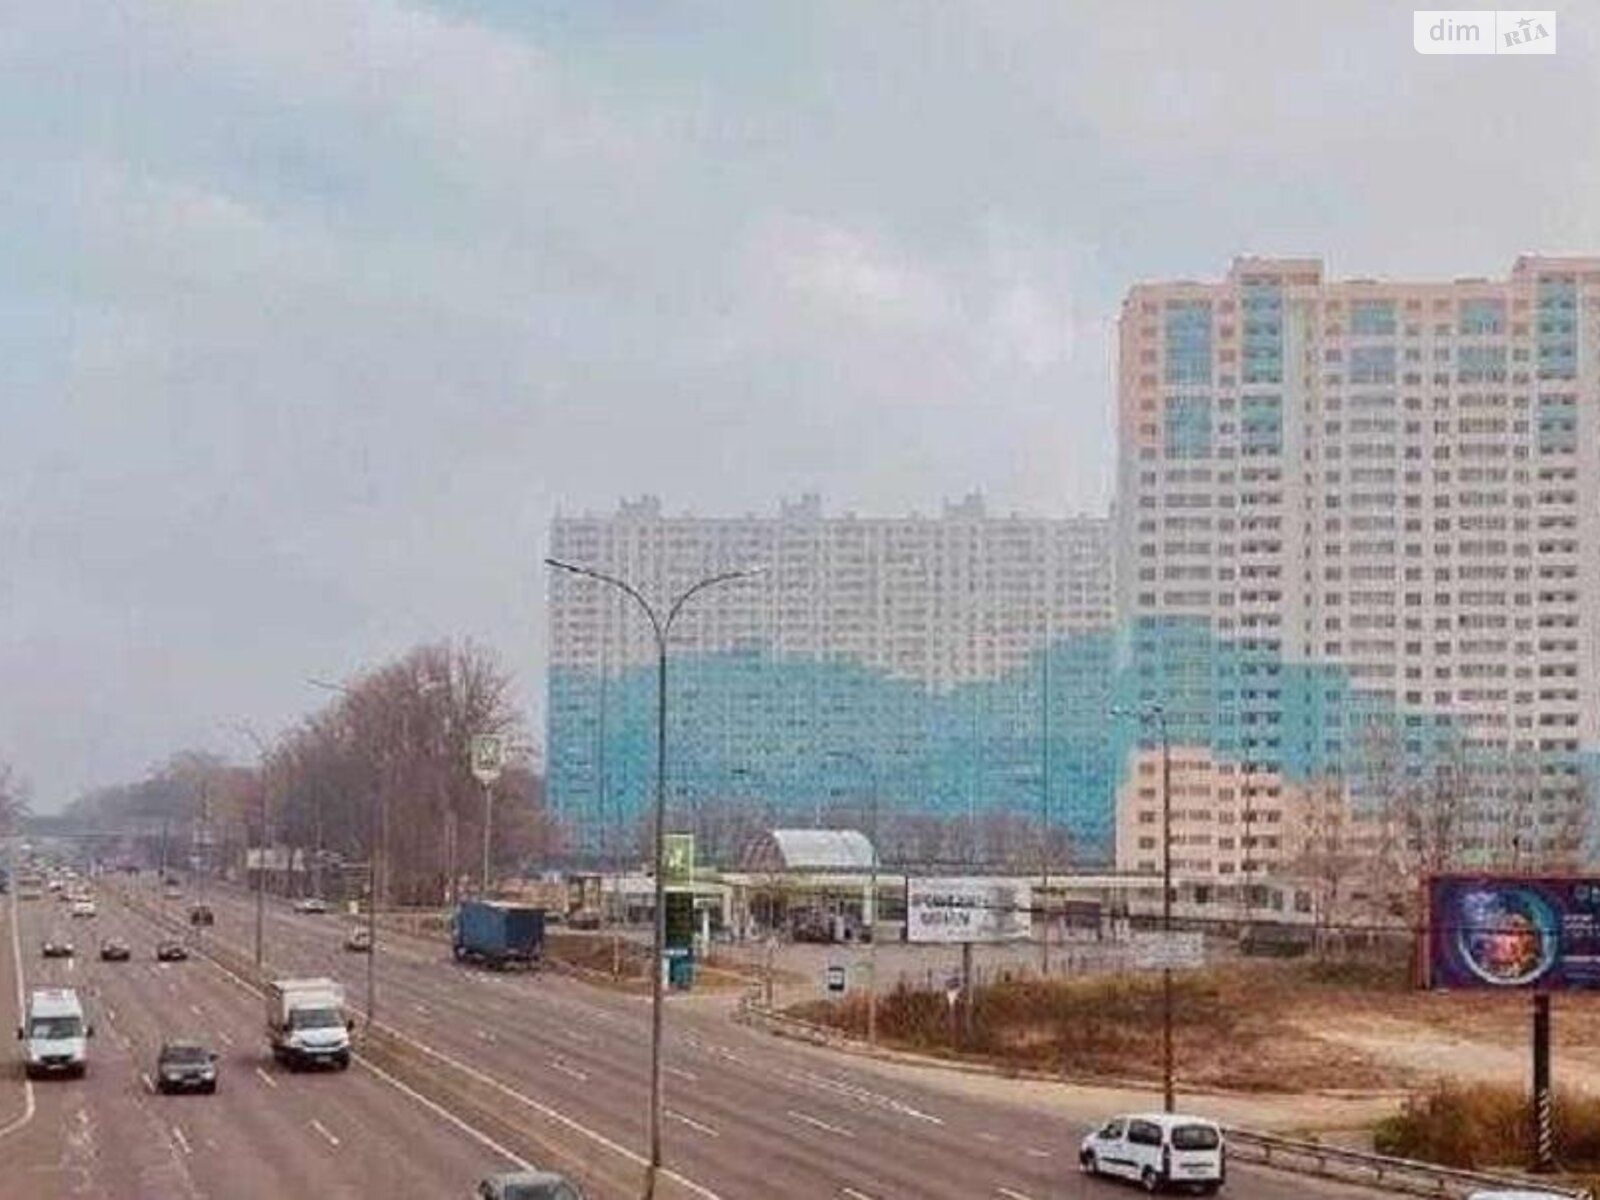 Продажа двухкомнатной квартиры в Новоселках, на ул. Пригородная 22, фото 1